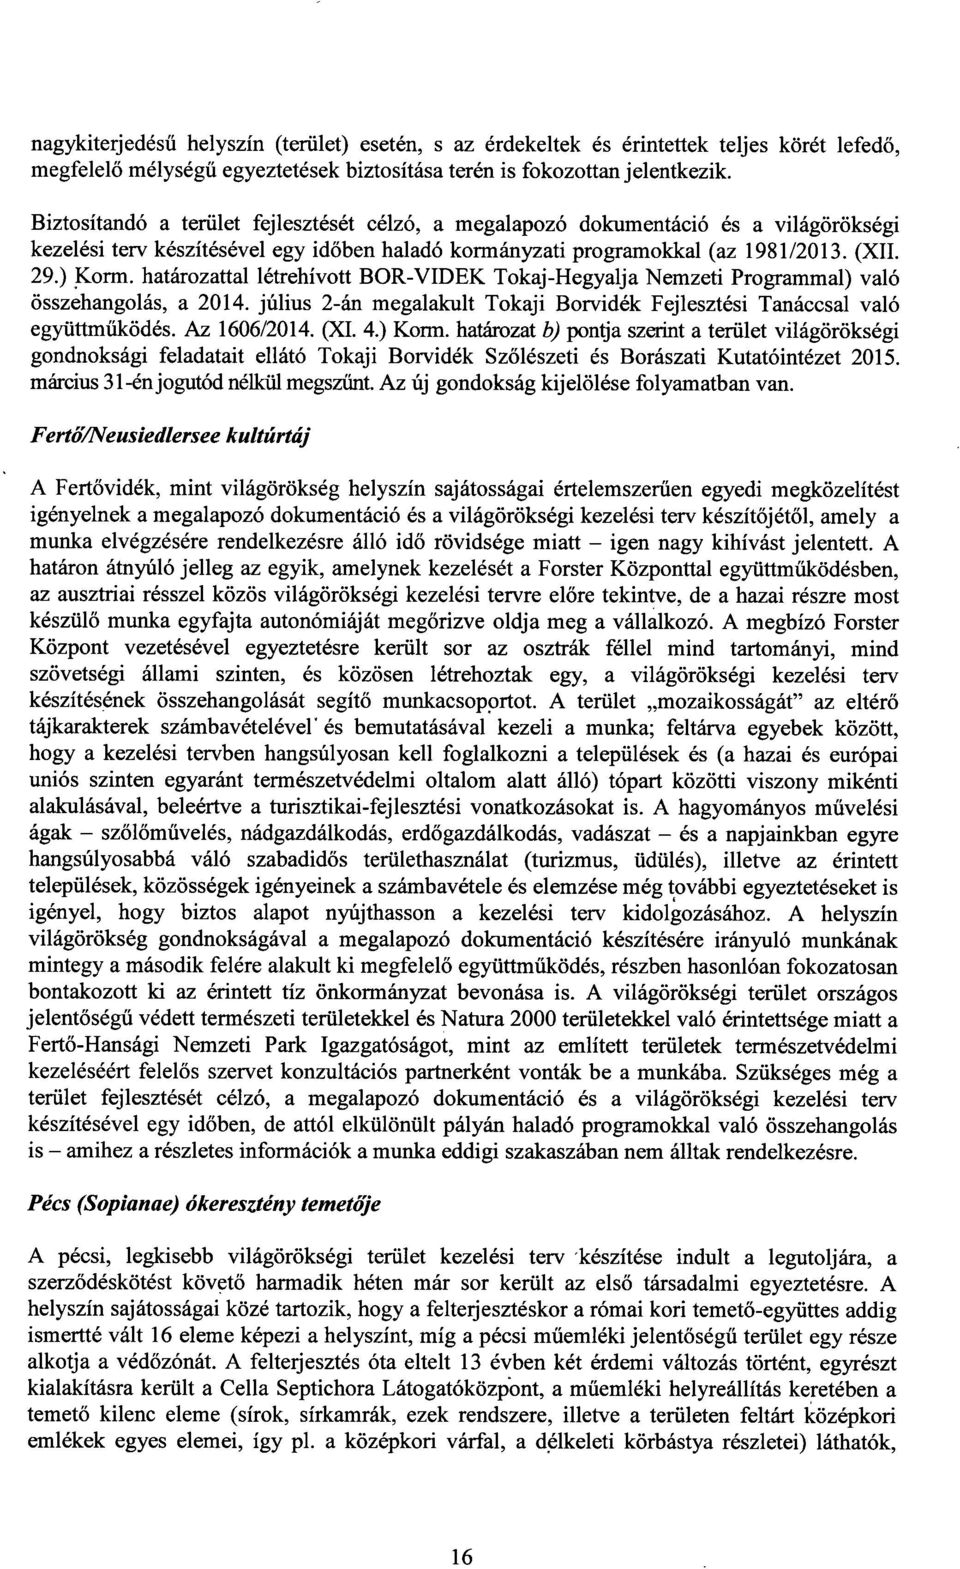 határozattal létrehívott BOR-VIDEK Tokaj-Hegyalja Nemzeti Programmal) val ó összehangolás, a 2014. július 2-án megalakult Tokaji Borvidék Fejlesztési Tanáccsal val ó együttműködés. Az 1606/2014. (XI.